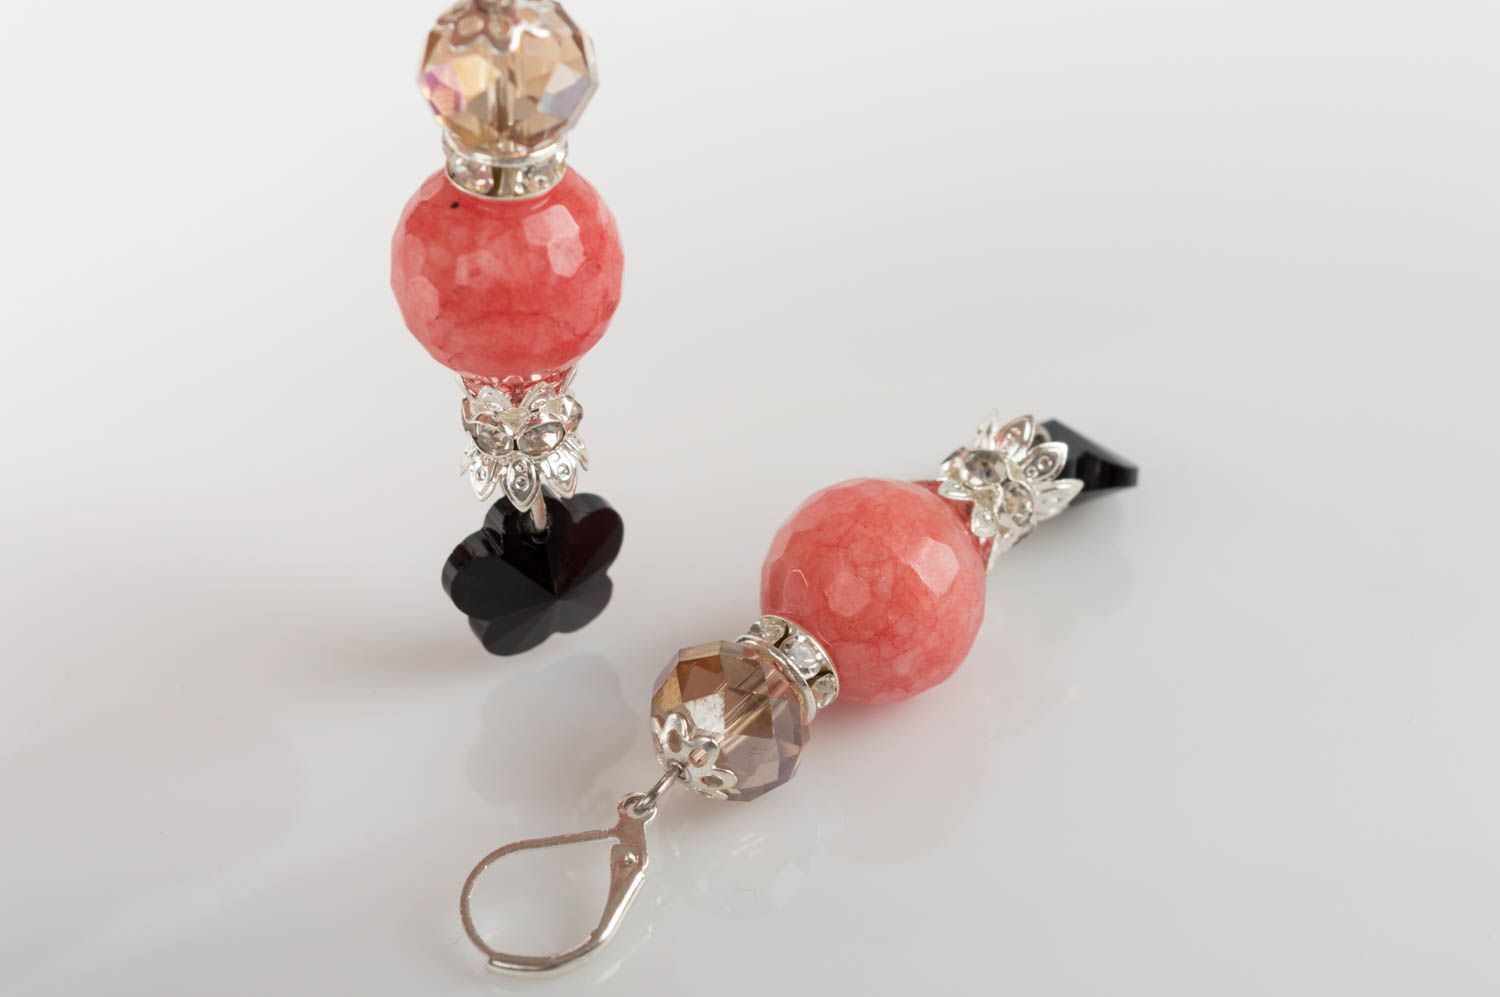 Unusual handmade gemstone earrings designer crystal earrings gifts for her photo 5